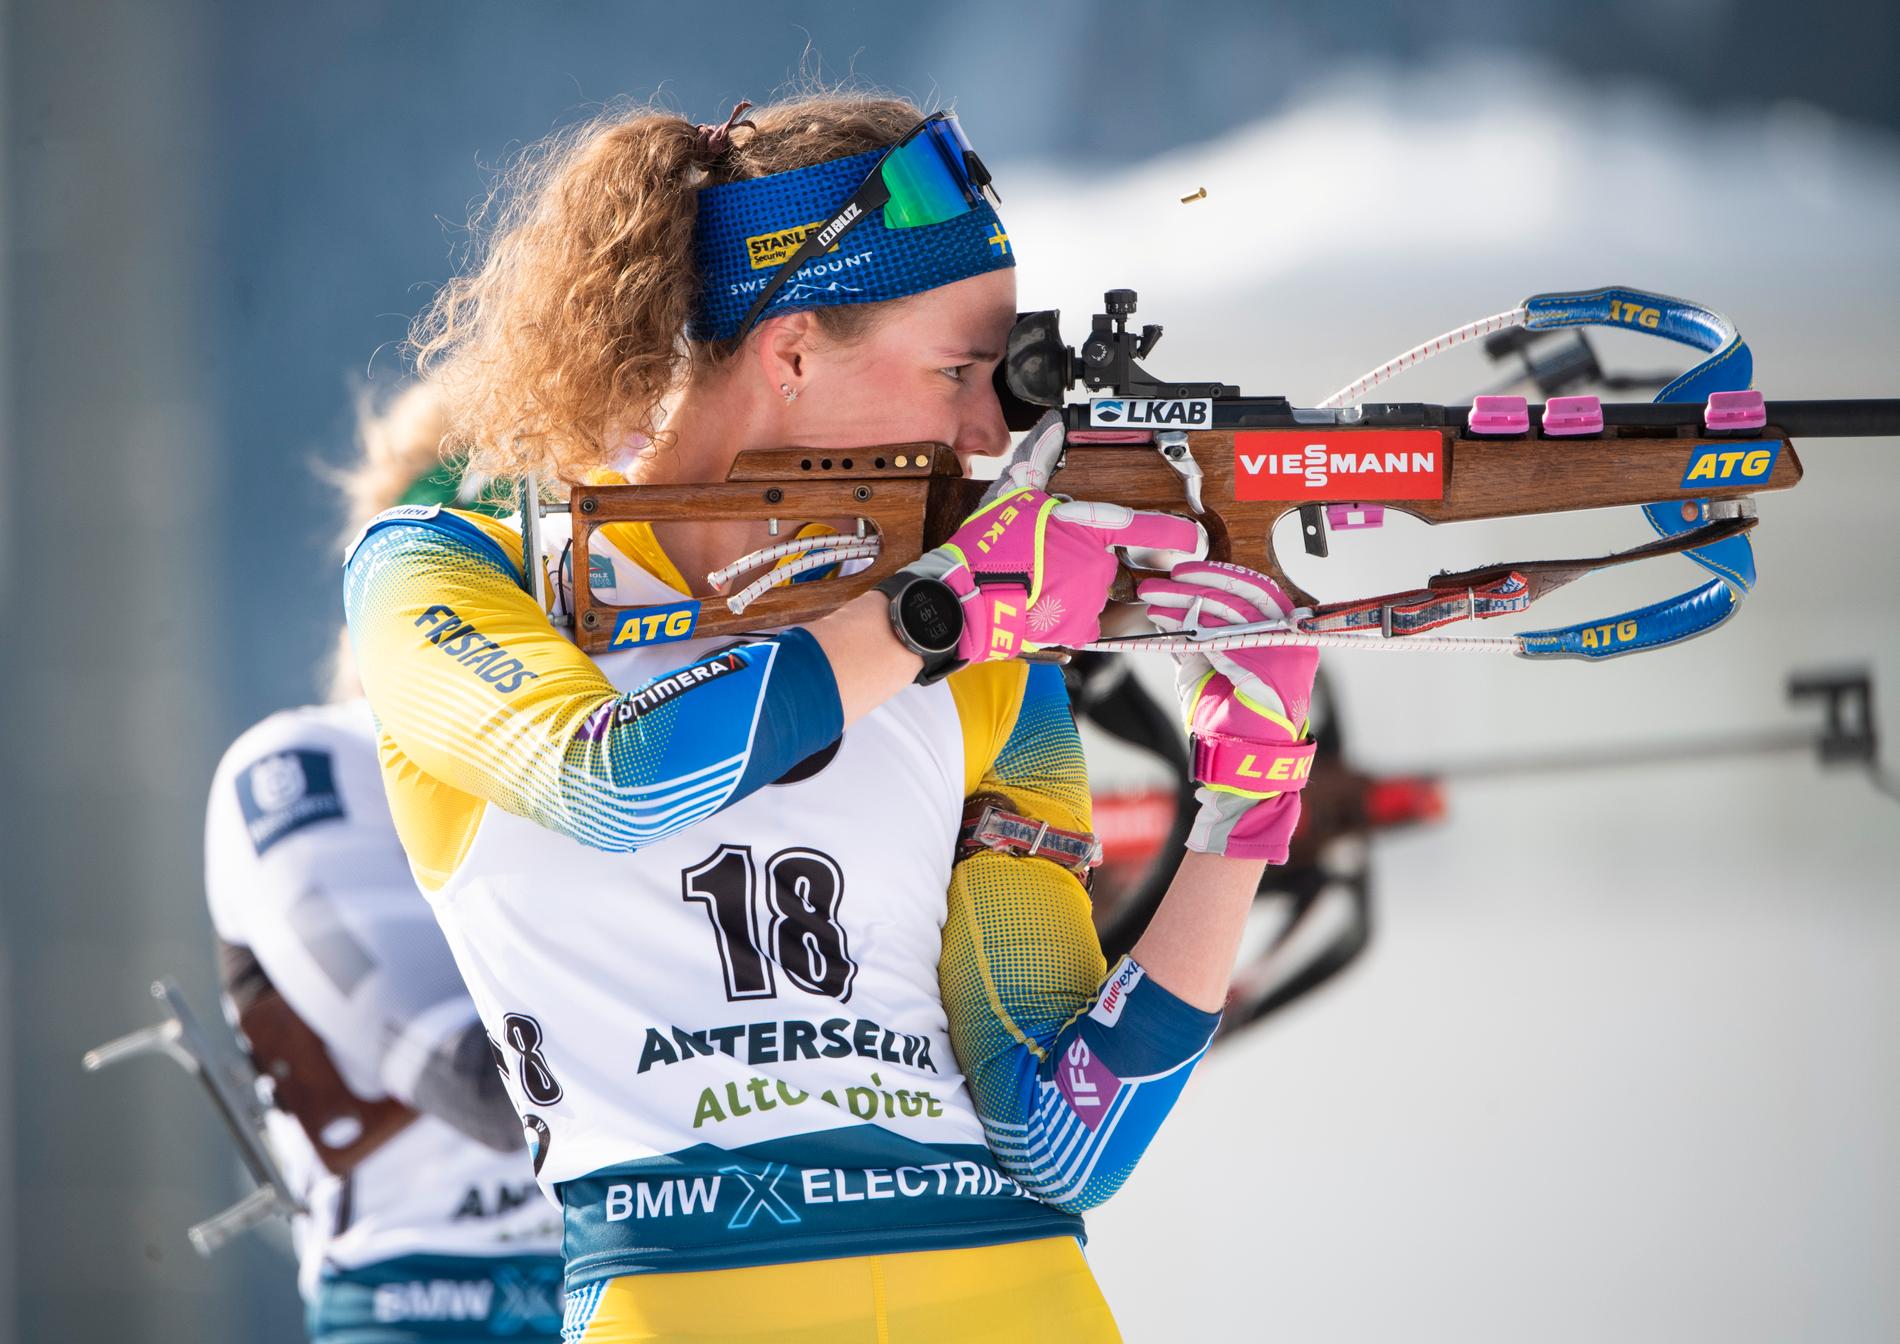 Hanna Öbergs stående skytte är ett av de bästa i hela världen. Kan hon hålla ihop det ännu en gång på skjutvallen och ta tredje raka mästerskapsguldet i distans?